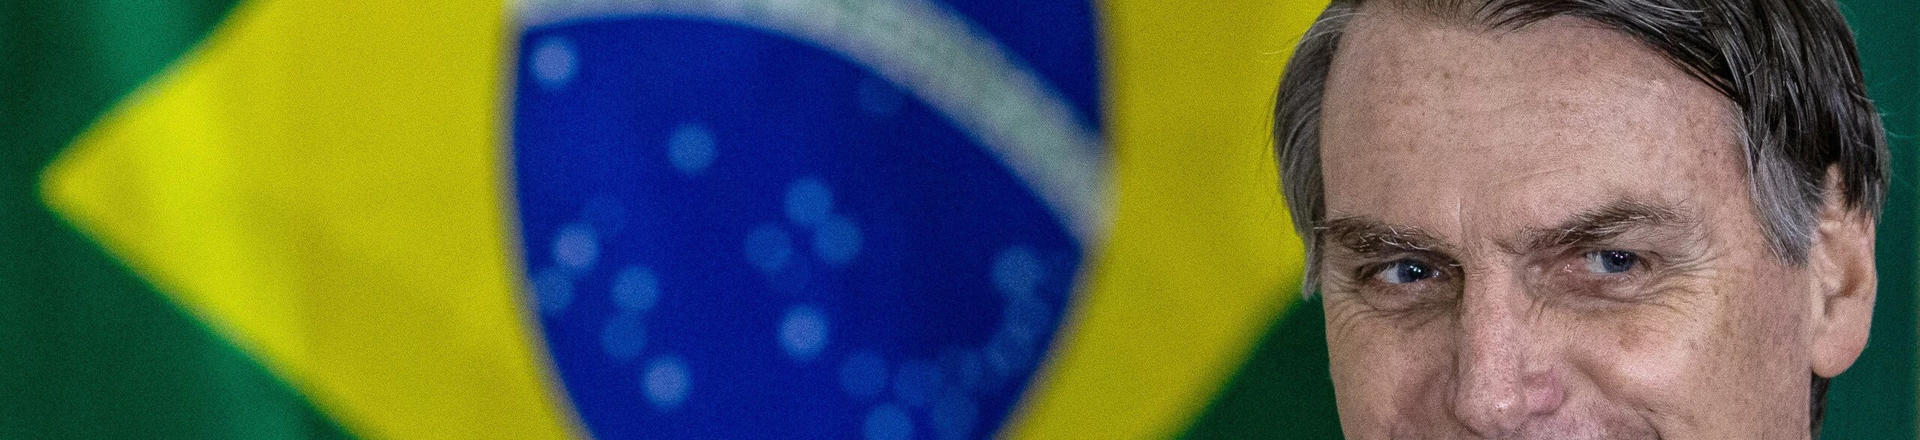 **ARQUIVO**RIO DE JANEIRO, RJ, 07.10.2018: O candidato do PSL à Presidência da República, Jair Bolsonaro, durante sua votação em um colégio militar no Rio de Janeiro, no primeiro turno das eleições 2018. (Foto: Eduardo Anizelli/Folhapress)